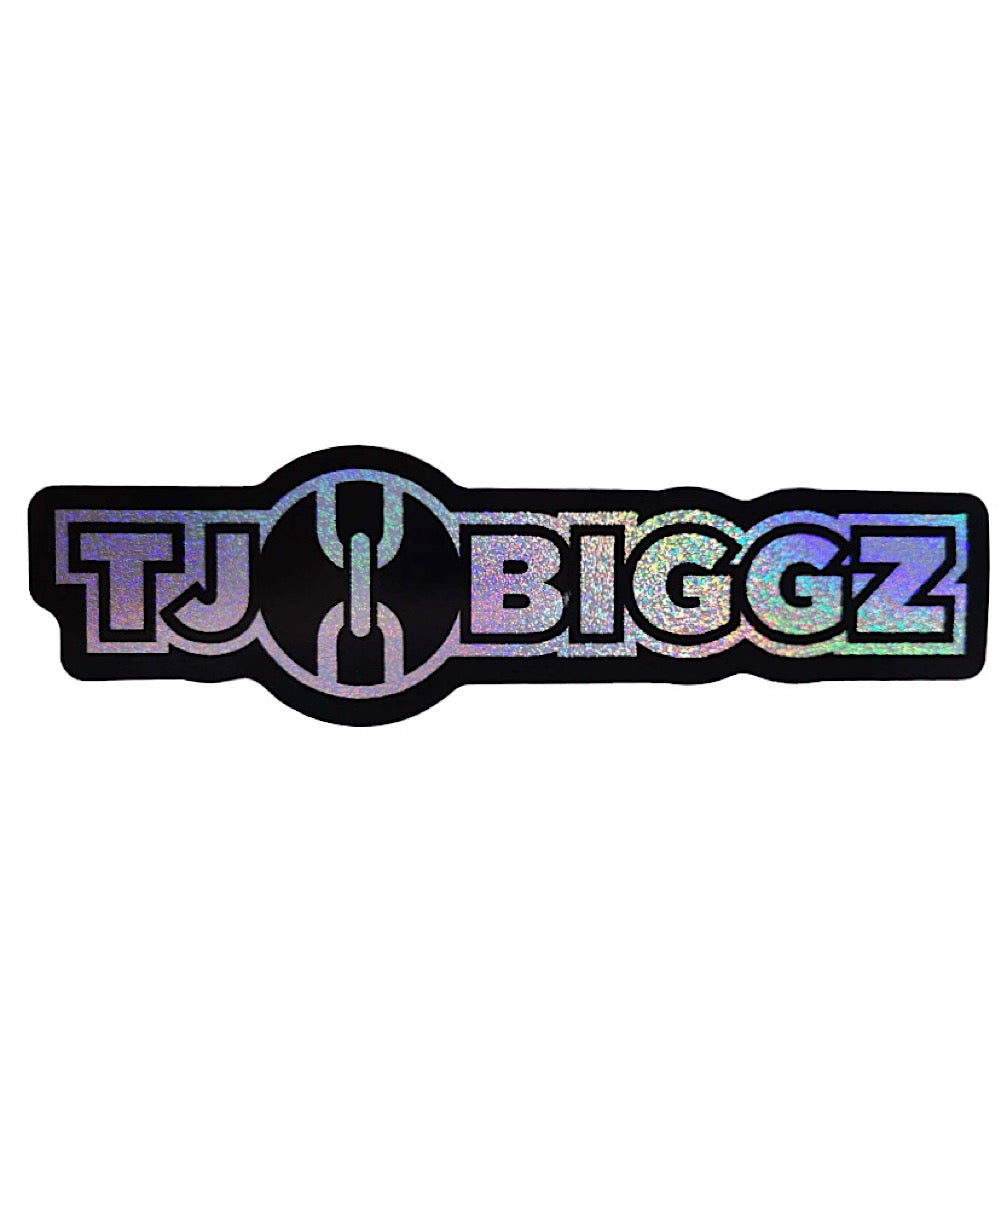 Tj Biggz Holographic Sticker